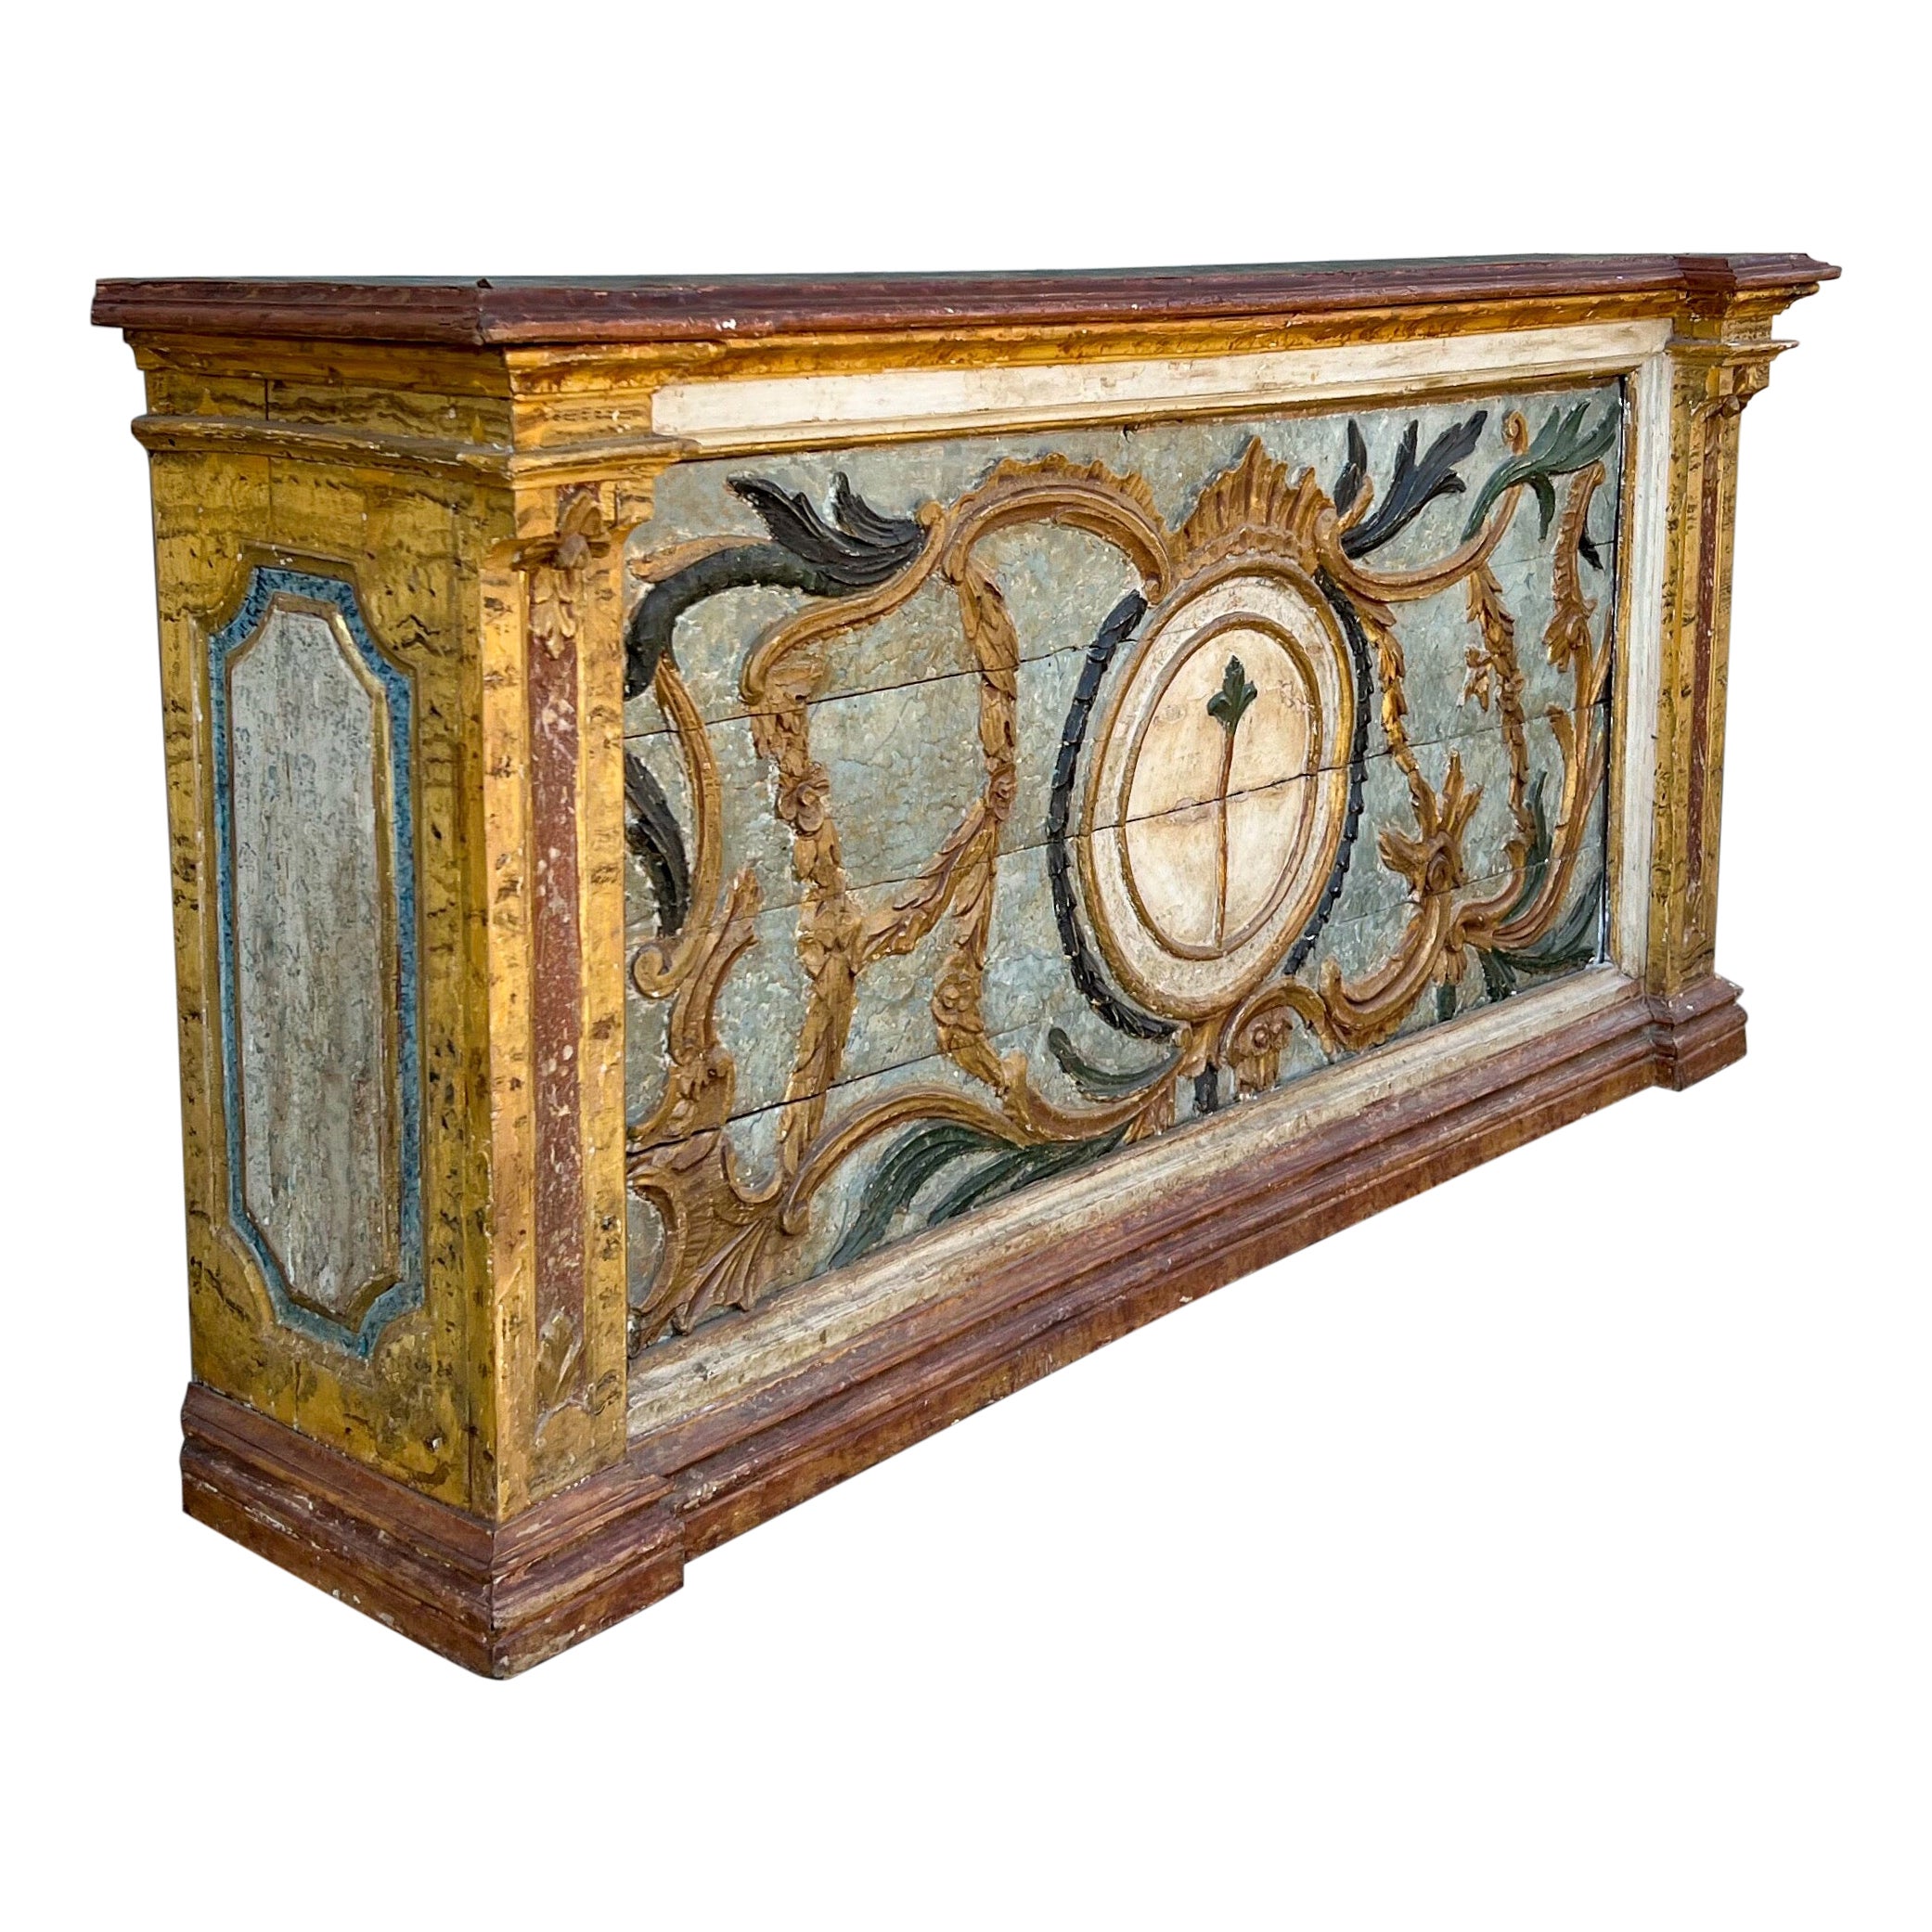 Crédence ou table console de style néoclassique italien peinte à la main du 19ème siècle